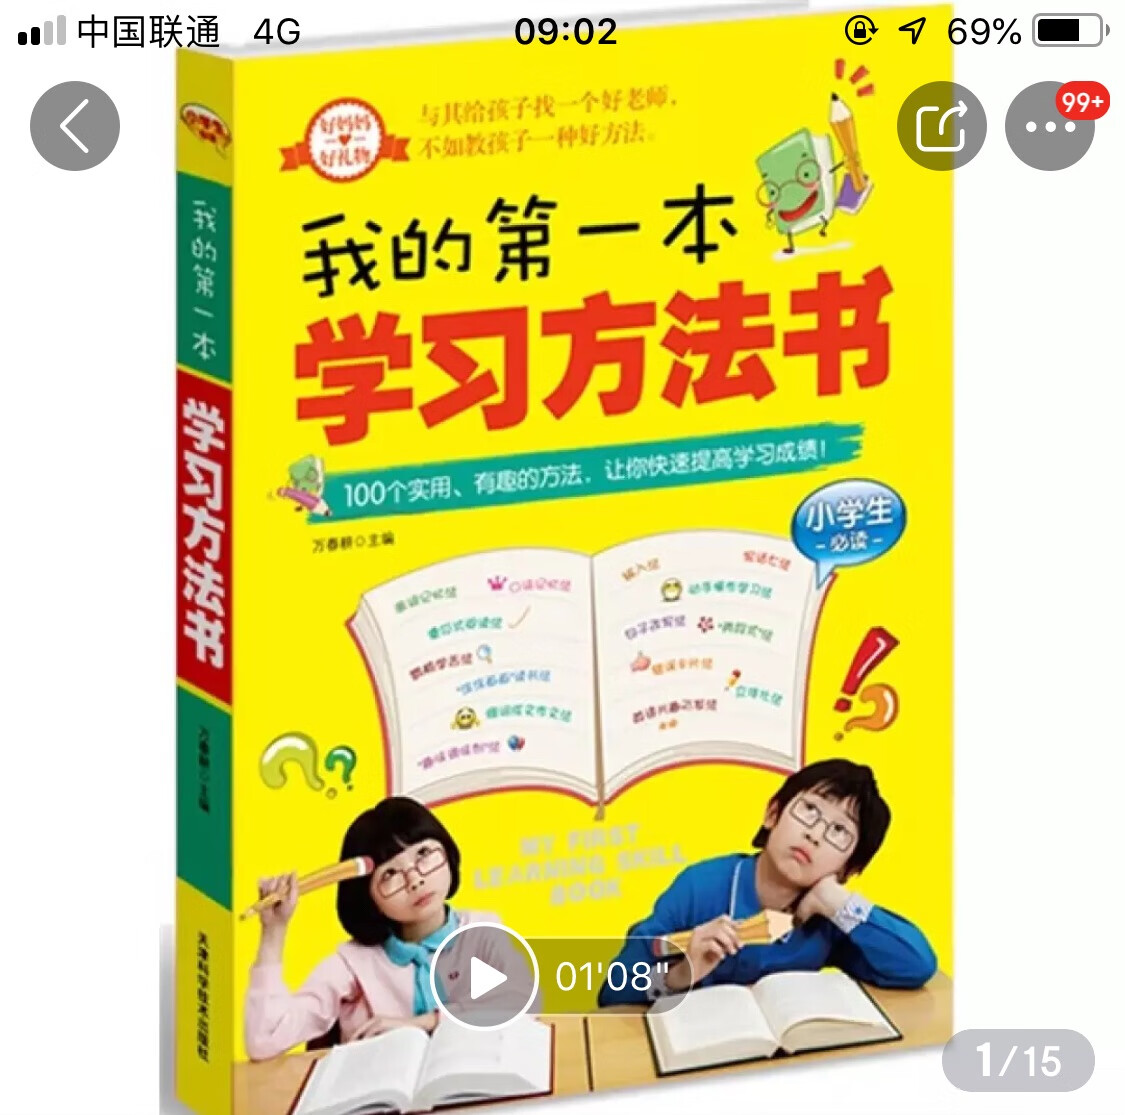 这本书是孩子学习的指导老师